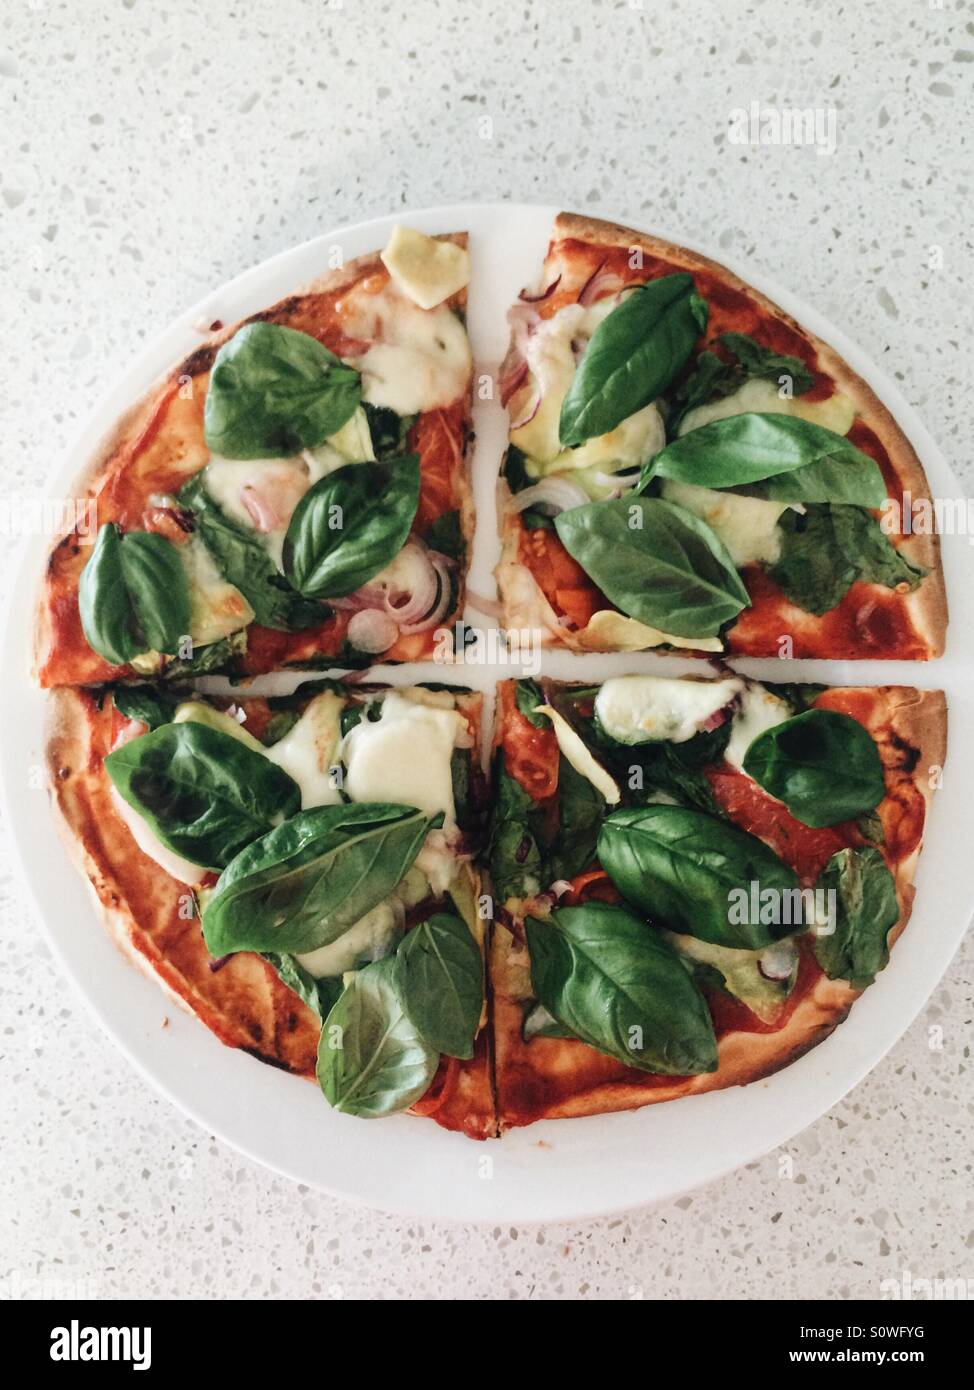 Pizza vegetariana con albahaca fresca cortada en cuartos Foto de stock